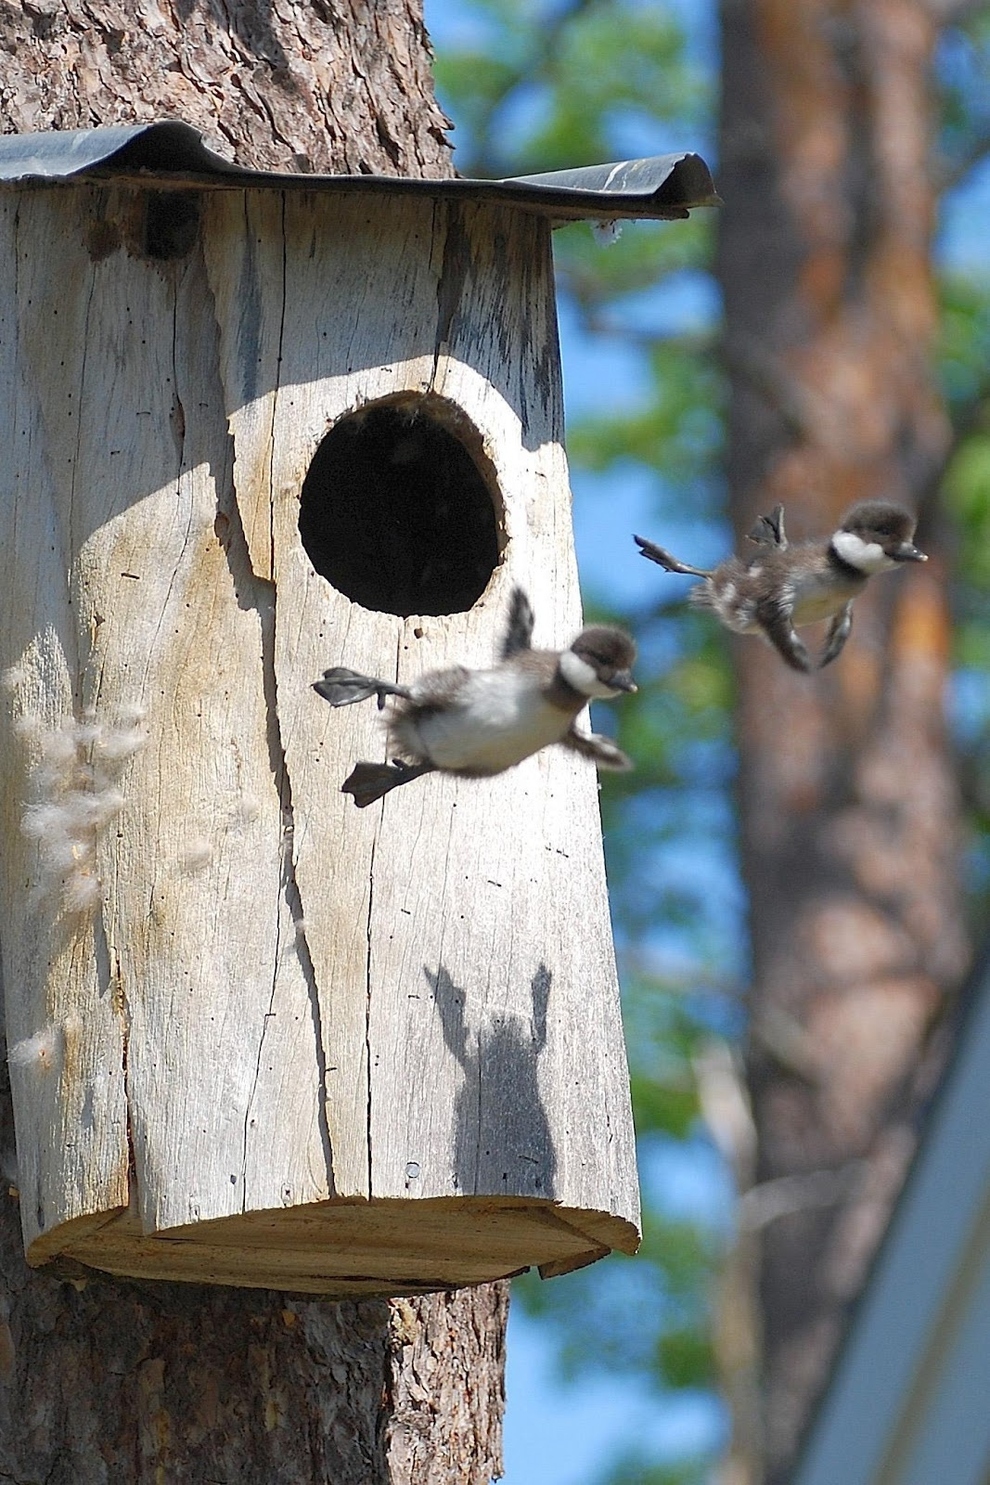 30. Gansos canadienses bebés dejando el nido por primera vez